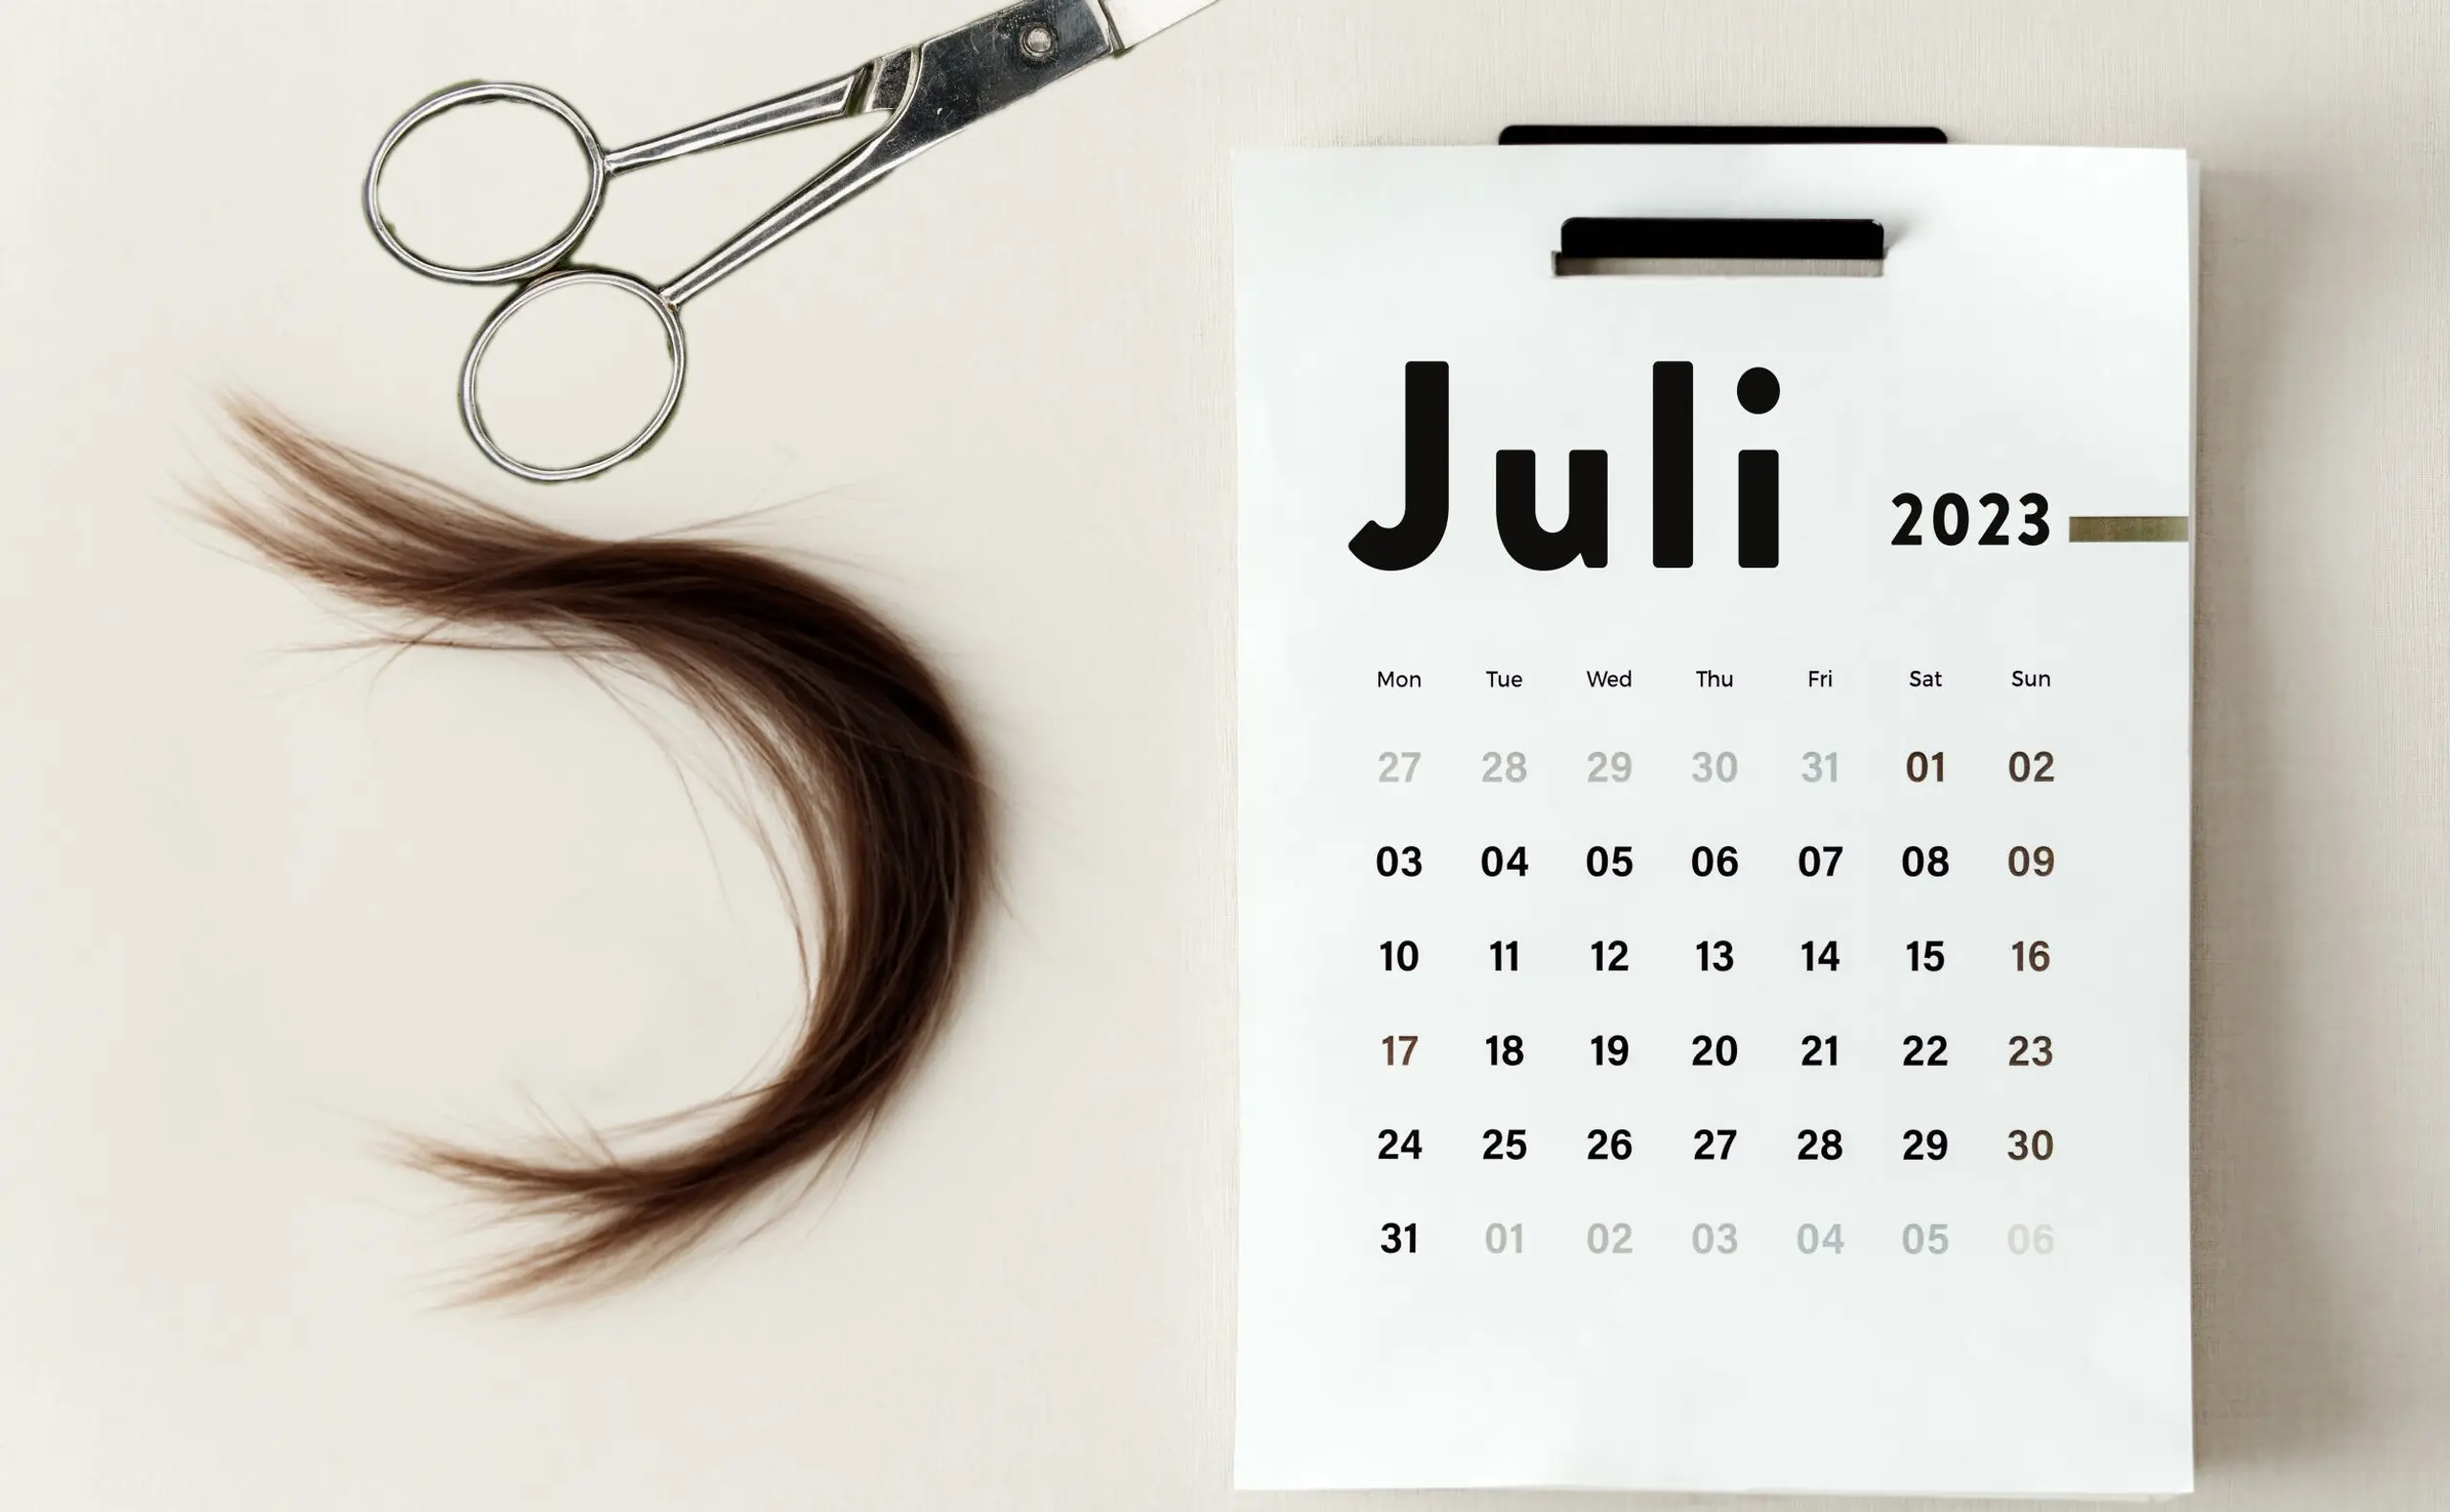 Haare schneiden nach Mondkalender